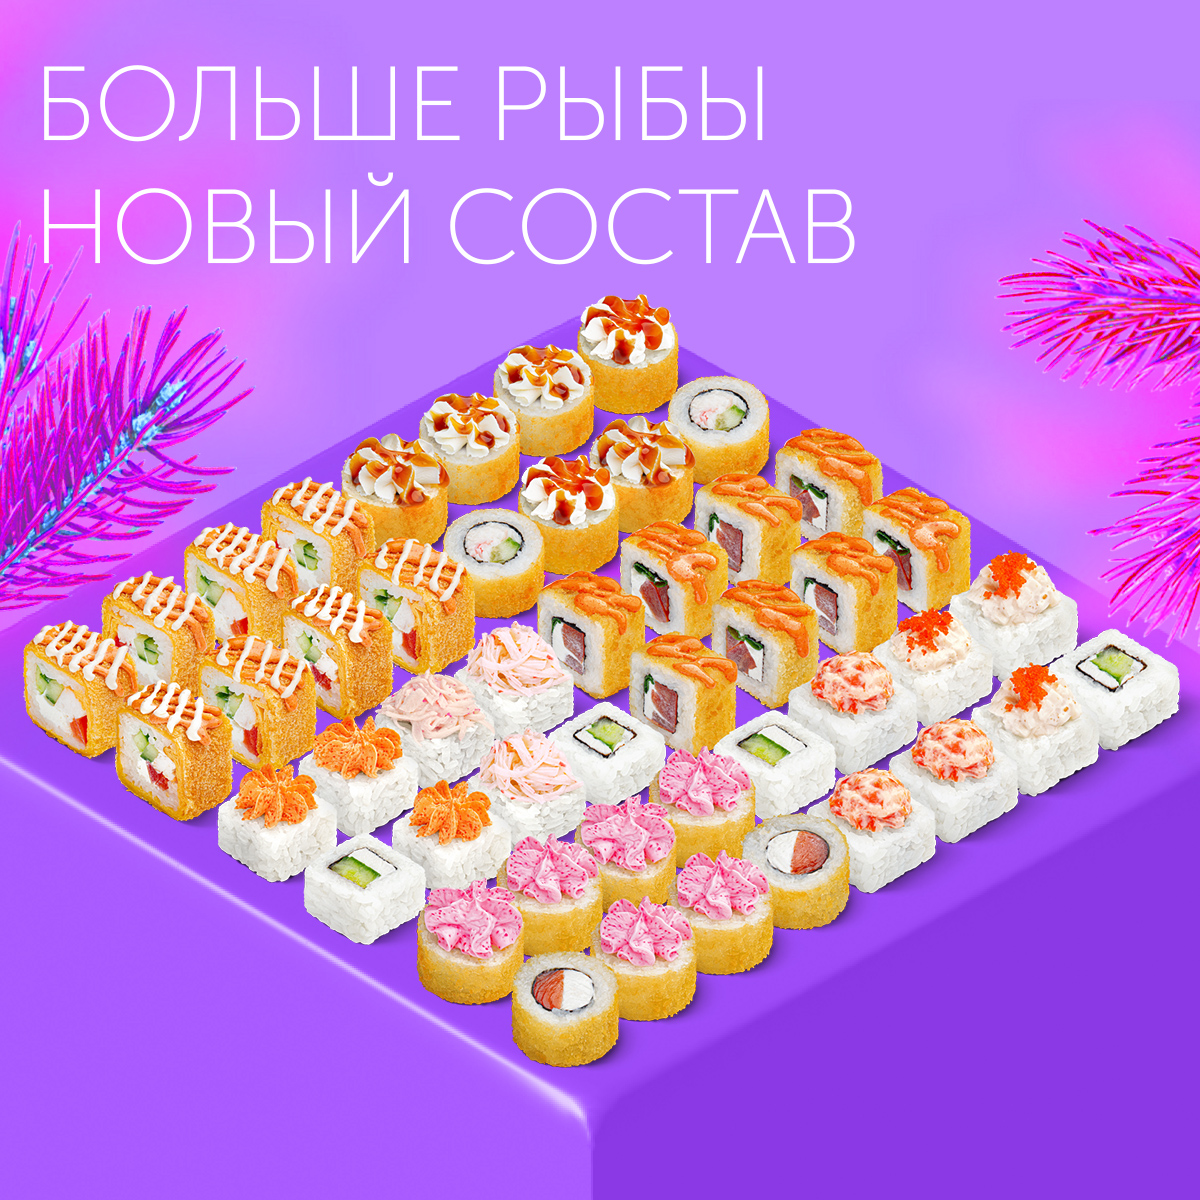 Заказ еды с доставкой в Ростове Великом ❤️ - Акция +1 блюдо бесплатно